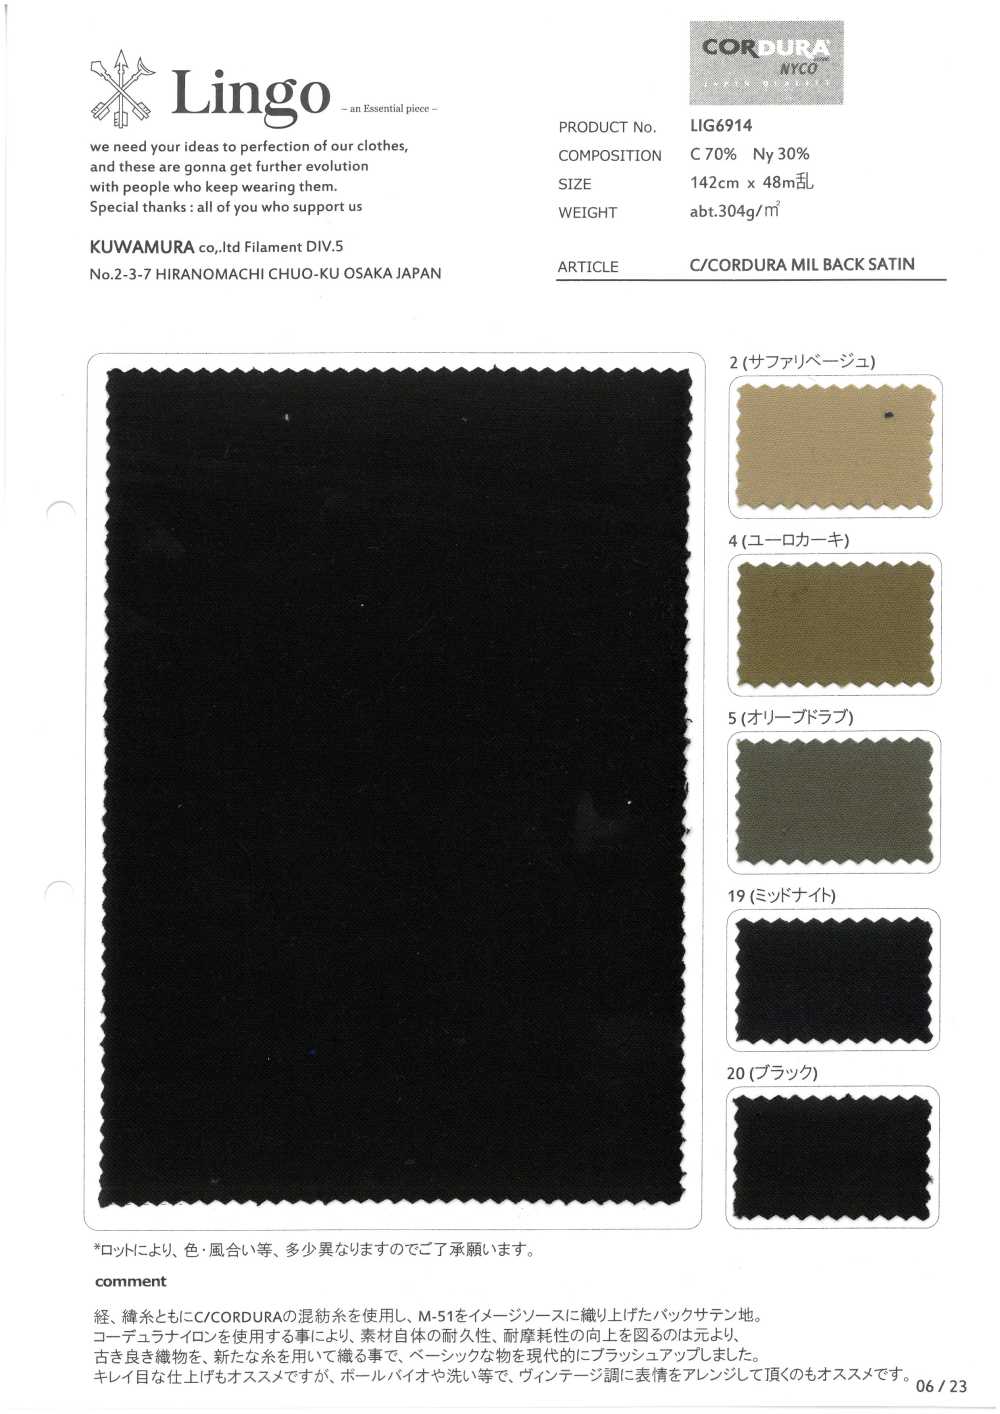 LIG6914 C/CORDURA MIL DOS SATINÉ[Fabrication De Textile] Lingo (Kuwamura Textile)